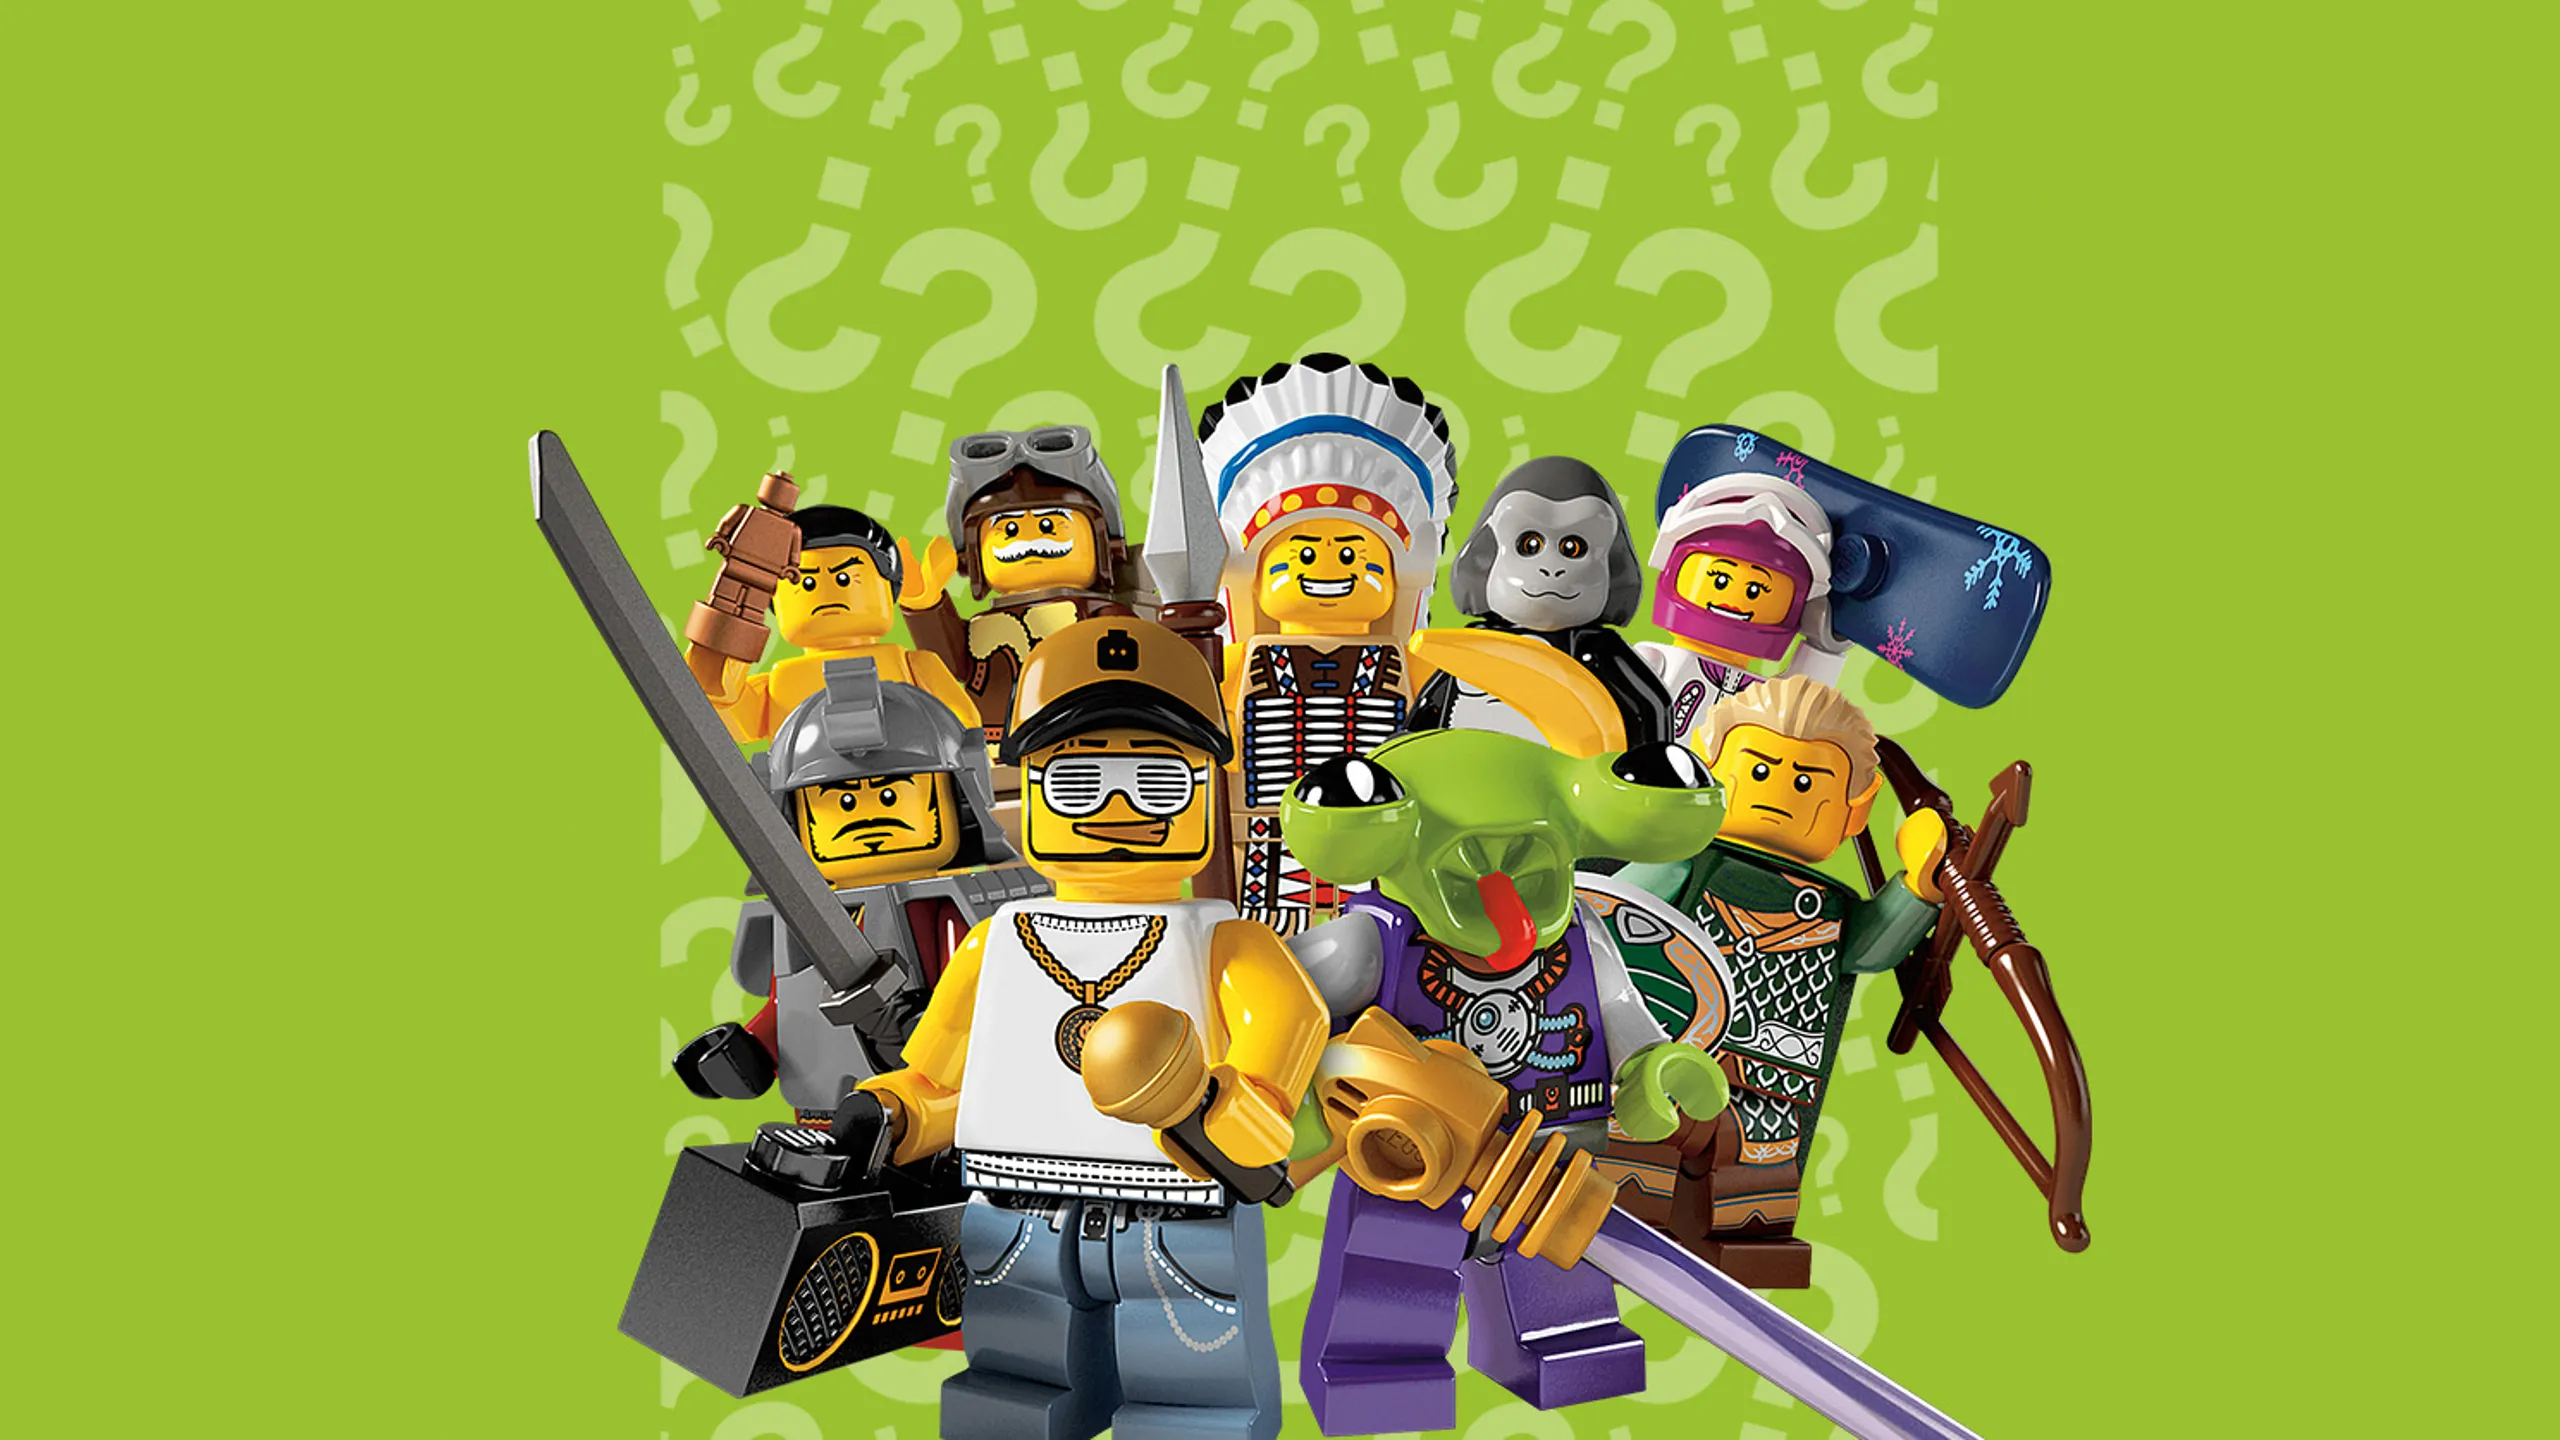 Contenitore LEGO Testa Scheletro Small - BRIX PLANET - LEGO MiniFigure  World Shop